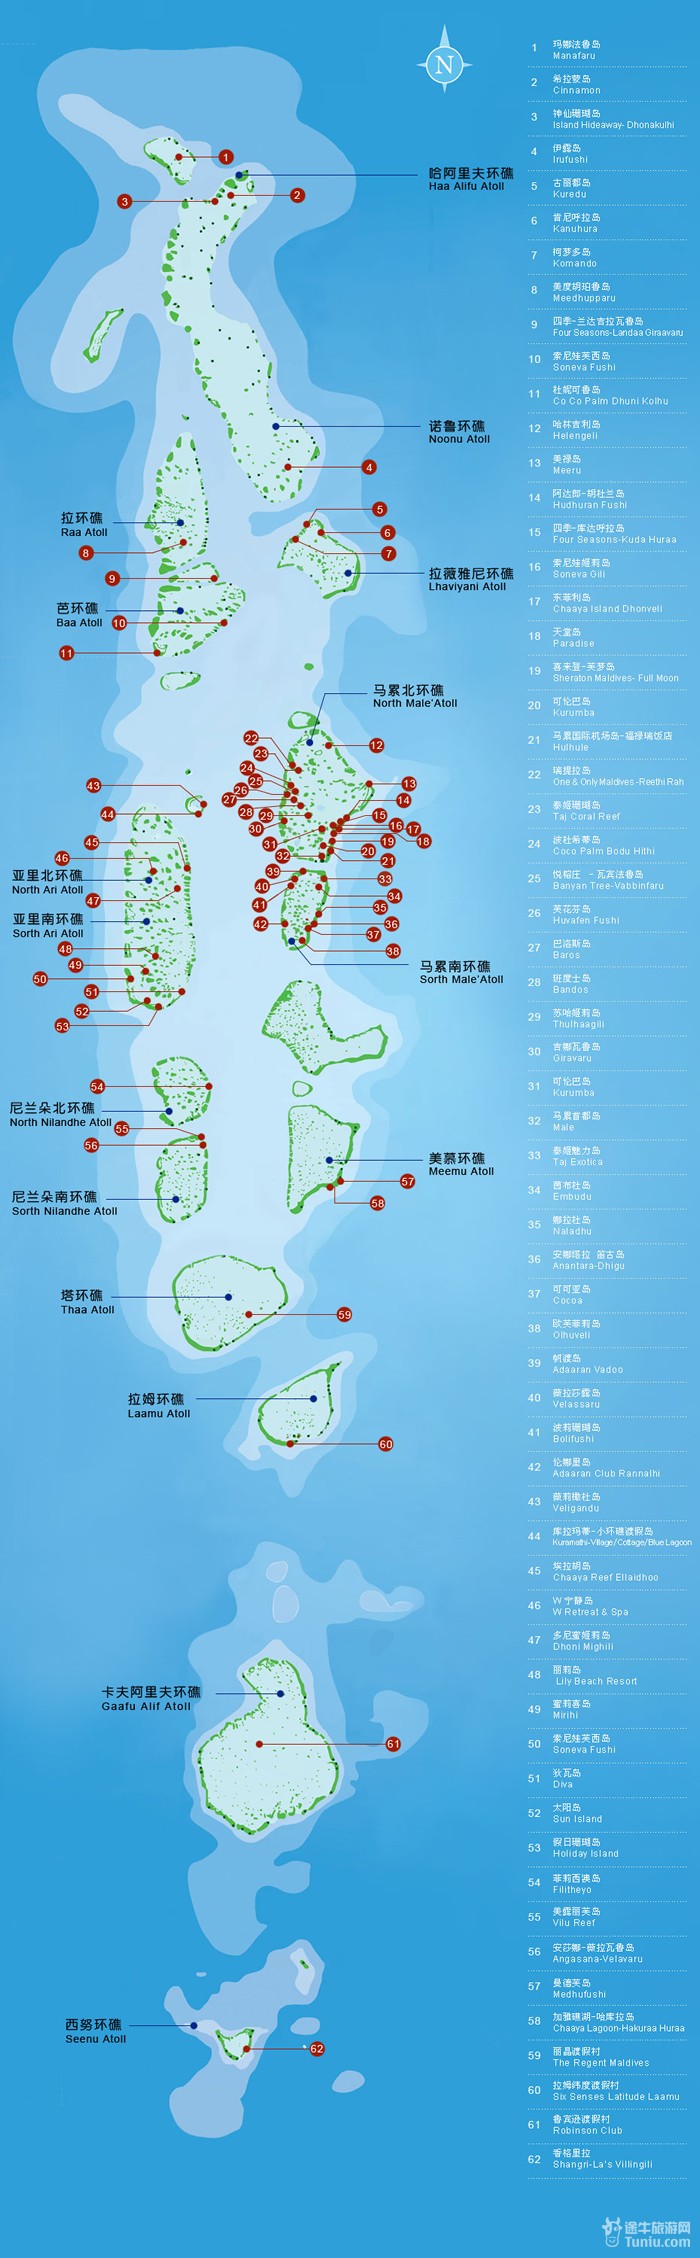 马尔代夫岛屿分布图_马尔代夫旅游贴士